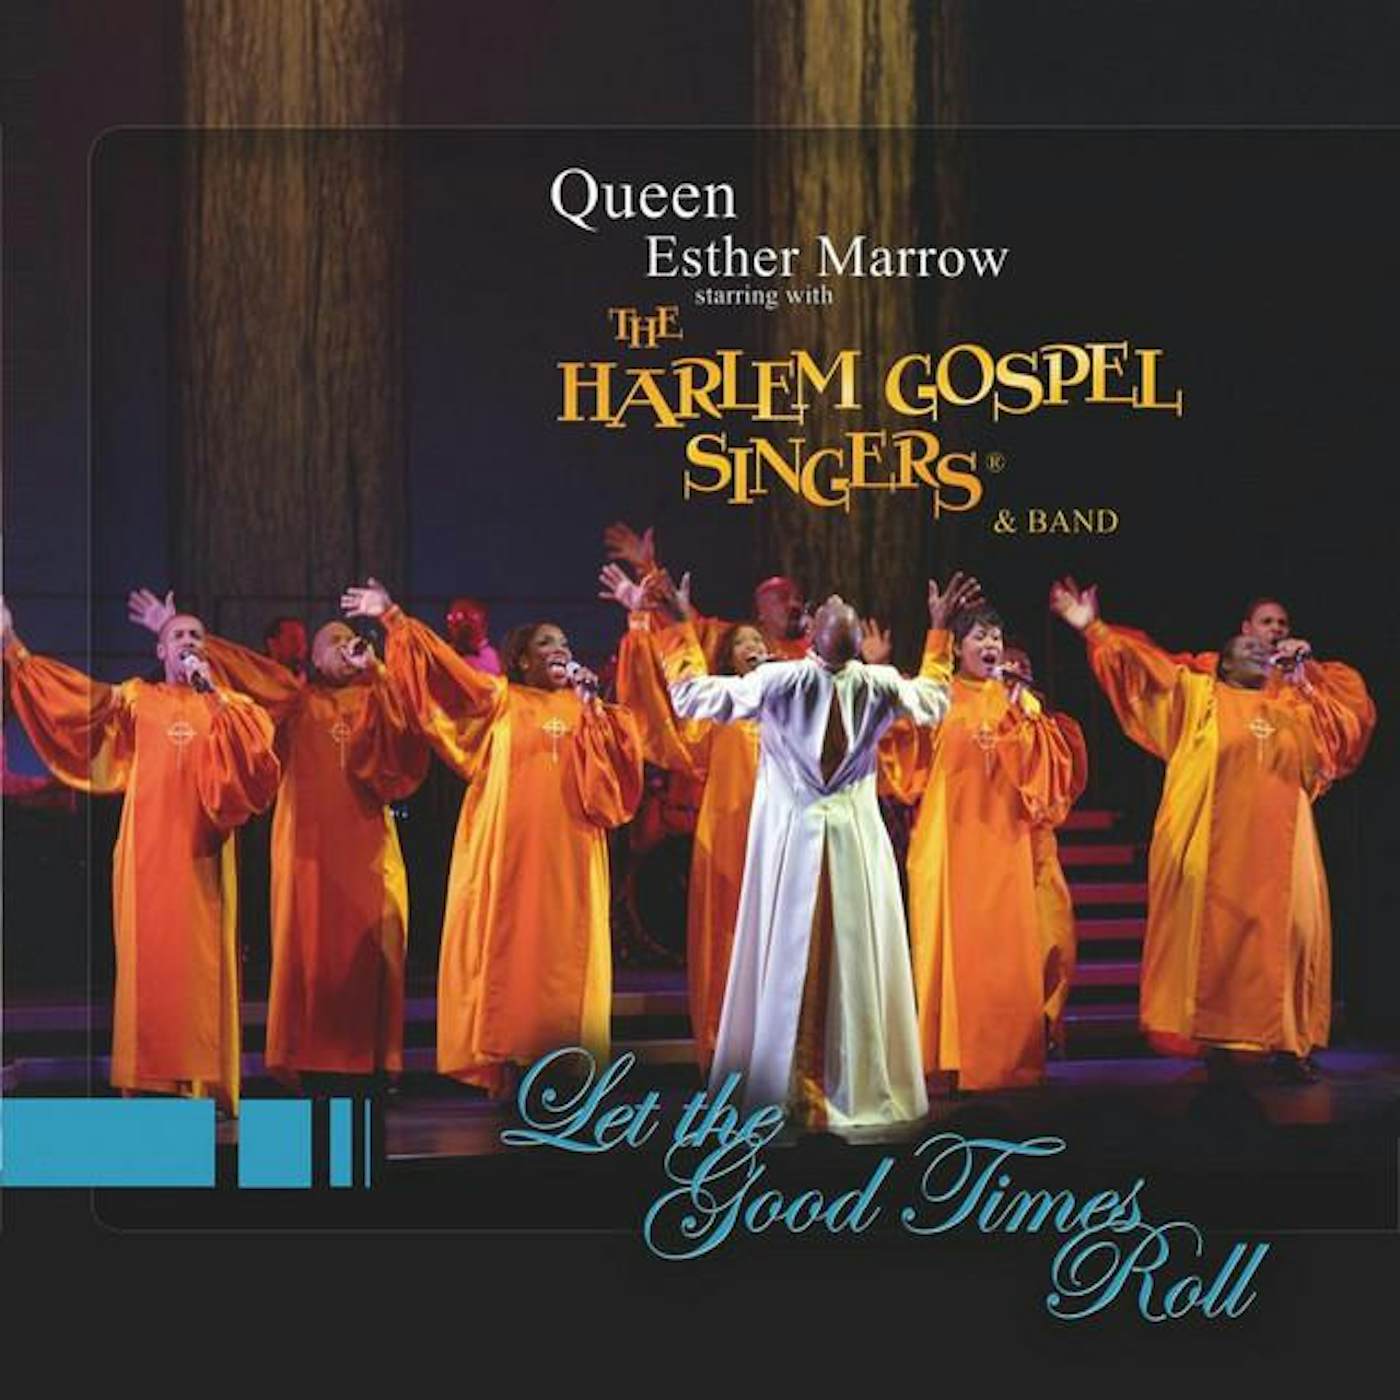 Queen Ester Marrow and the Harlem Gospel Singers